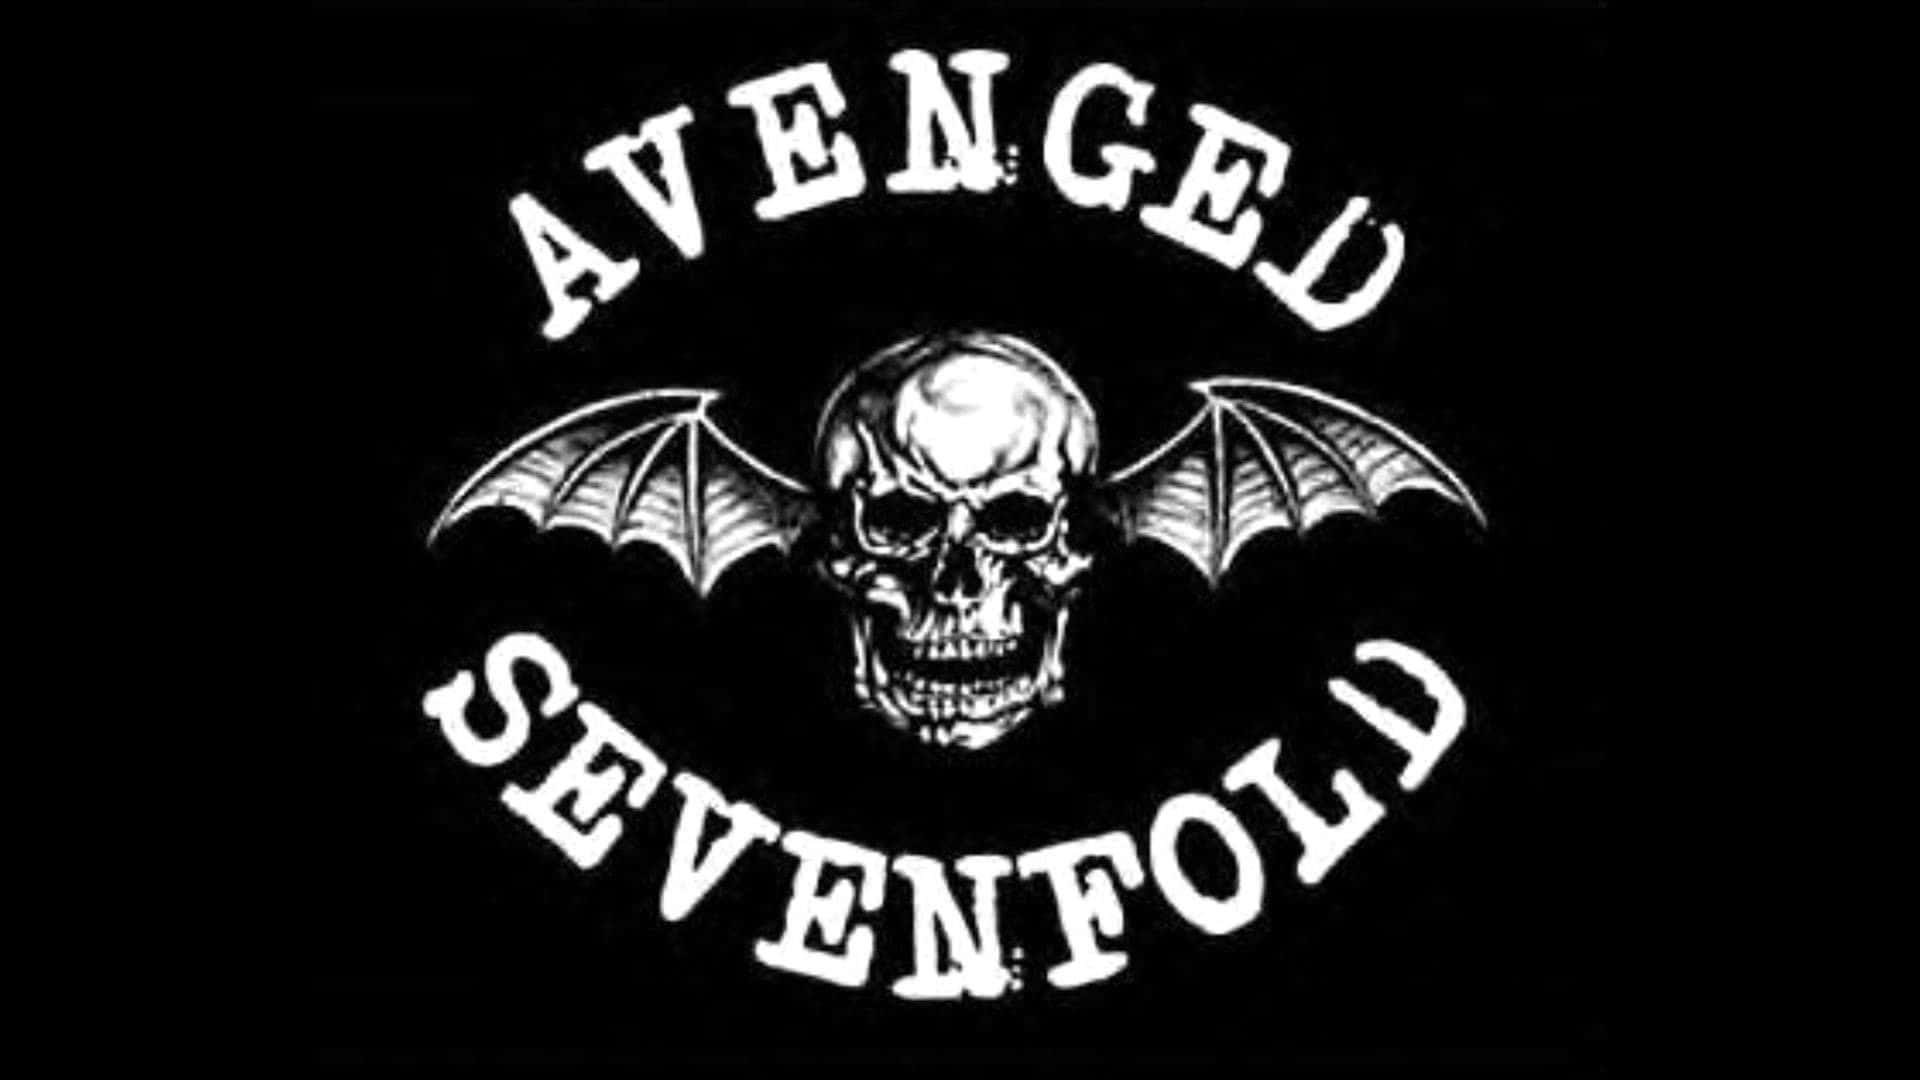 Avenged Sevenfold With Flying Skull Wallpaper